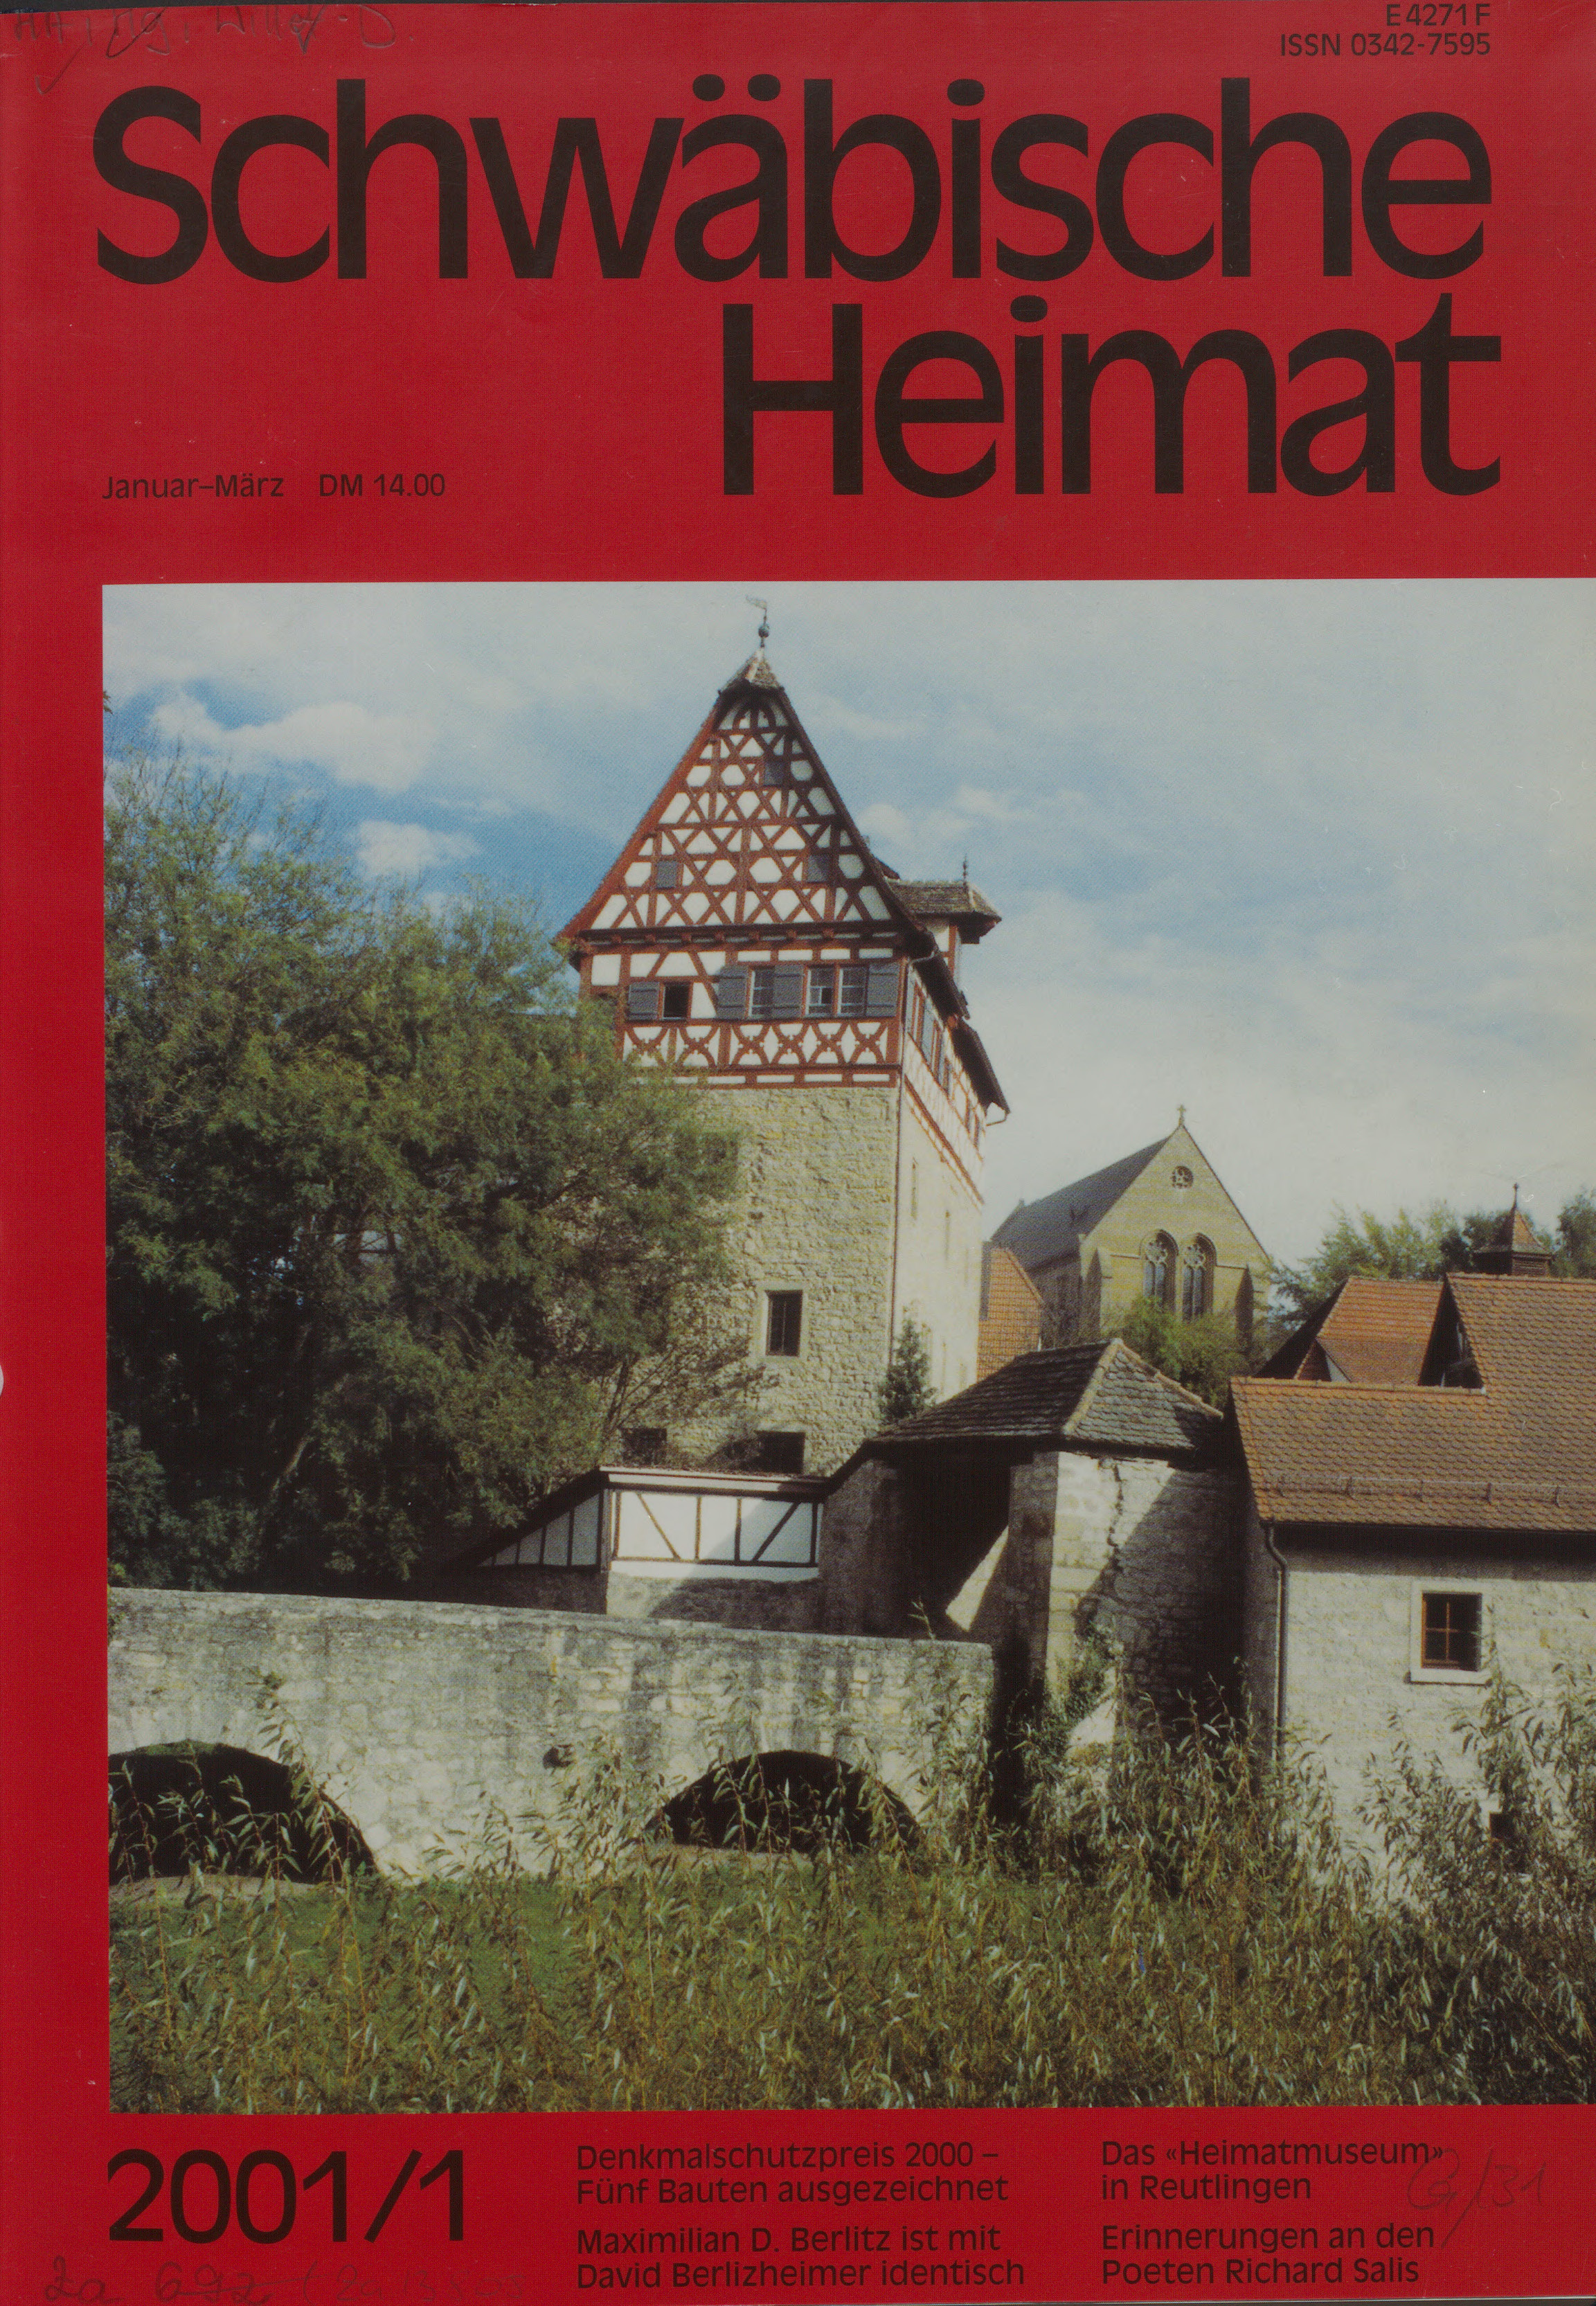                     Ansehen Bd. 52 Nr. 1 (2001): Schwäbische Heimat
                